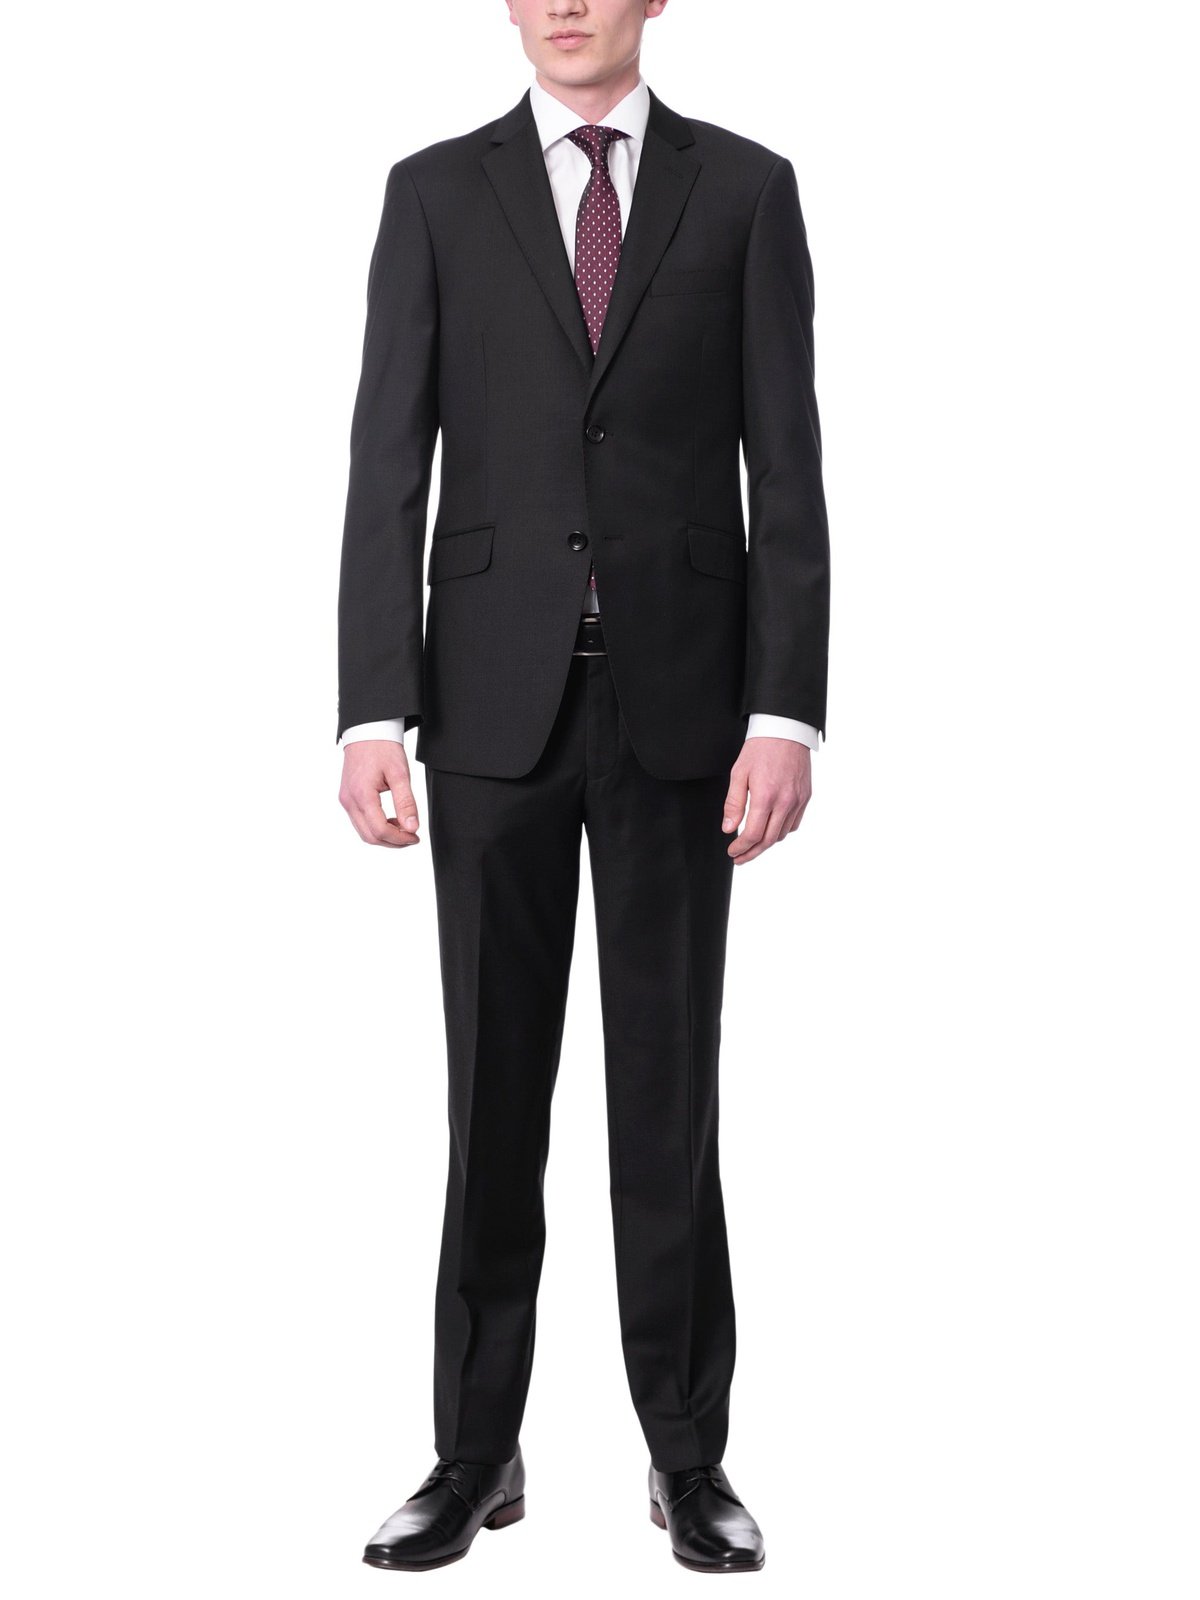 Label M SUITS Men&#39;s Euro Slim Fit Solid Black Two Button 2 Piece 100% Wool Suit